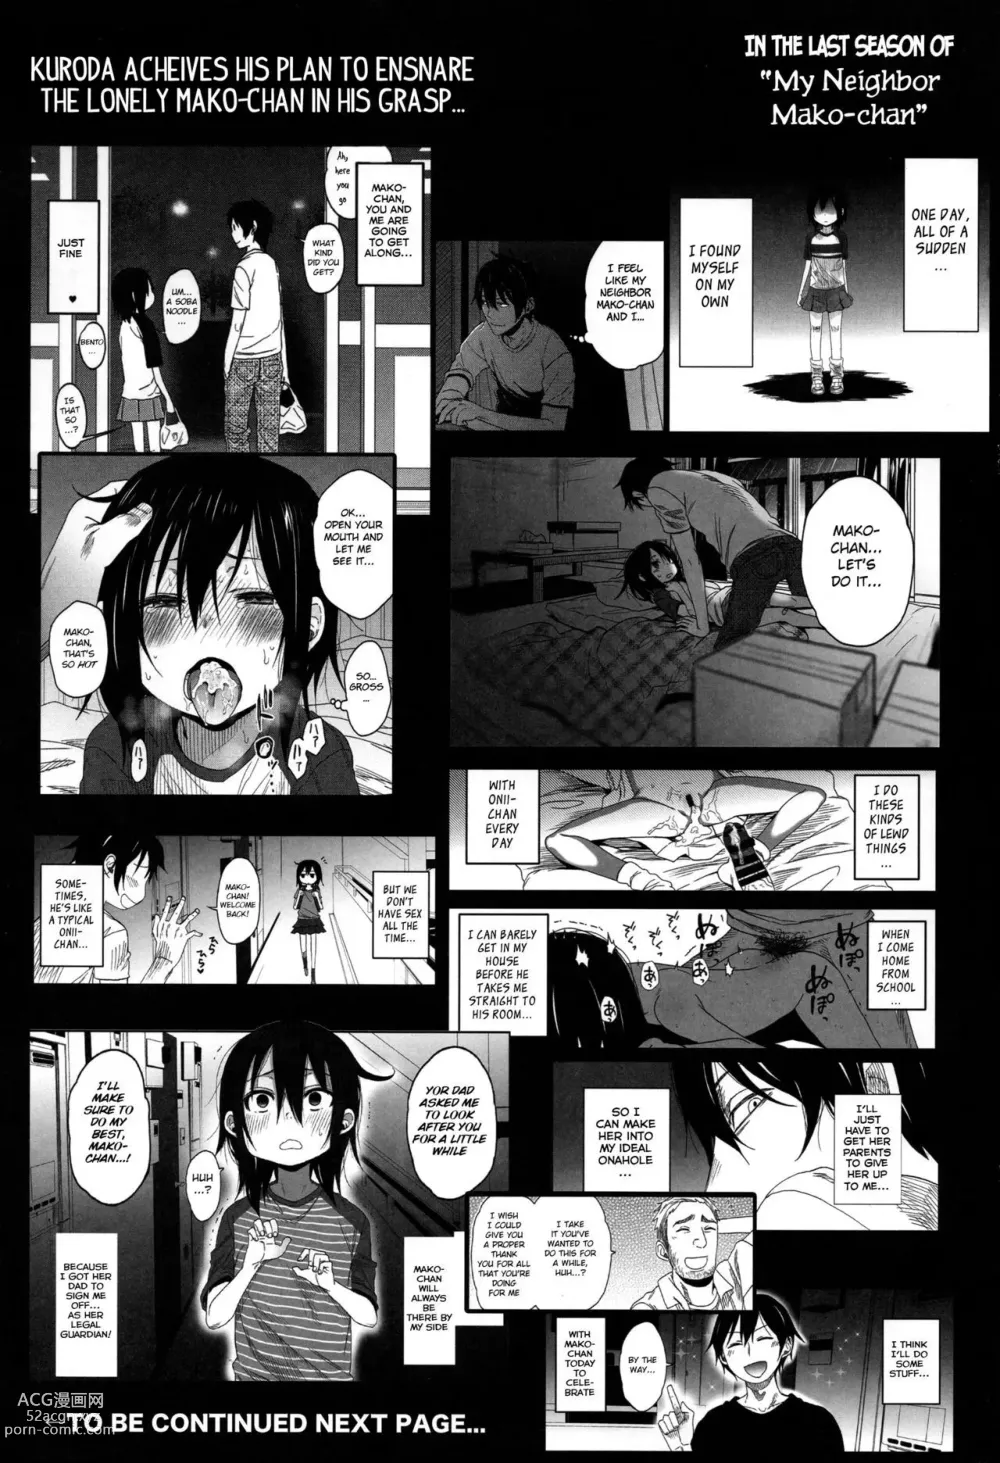 Page 3 of doujinshi Tonari no Mako-chan Season 2 Vol. 1